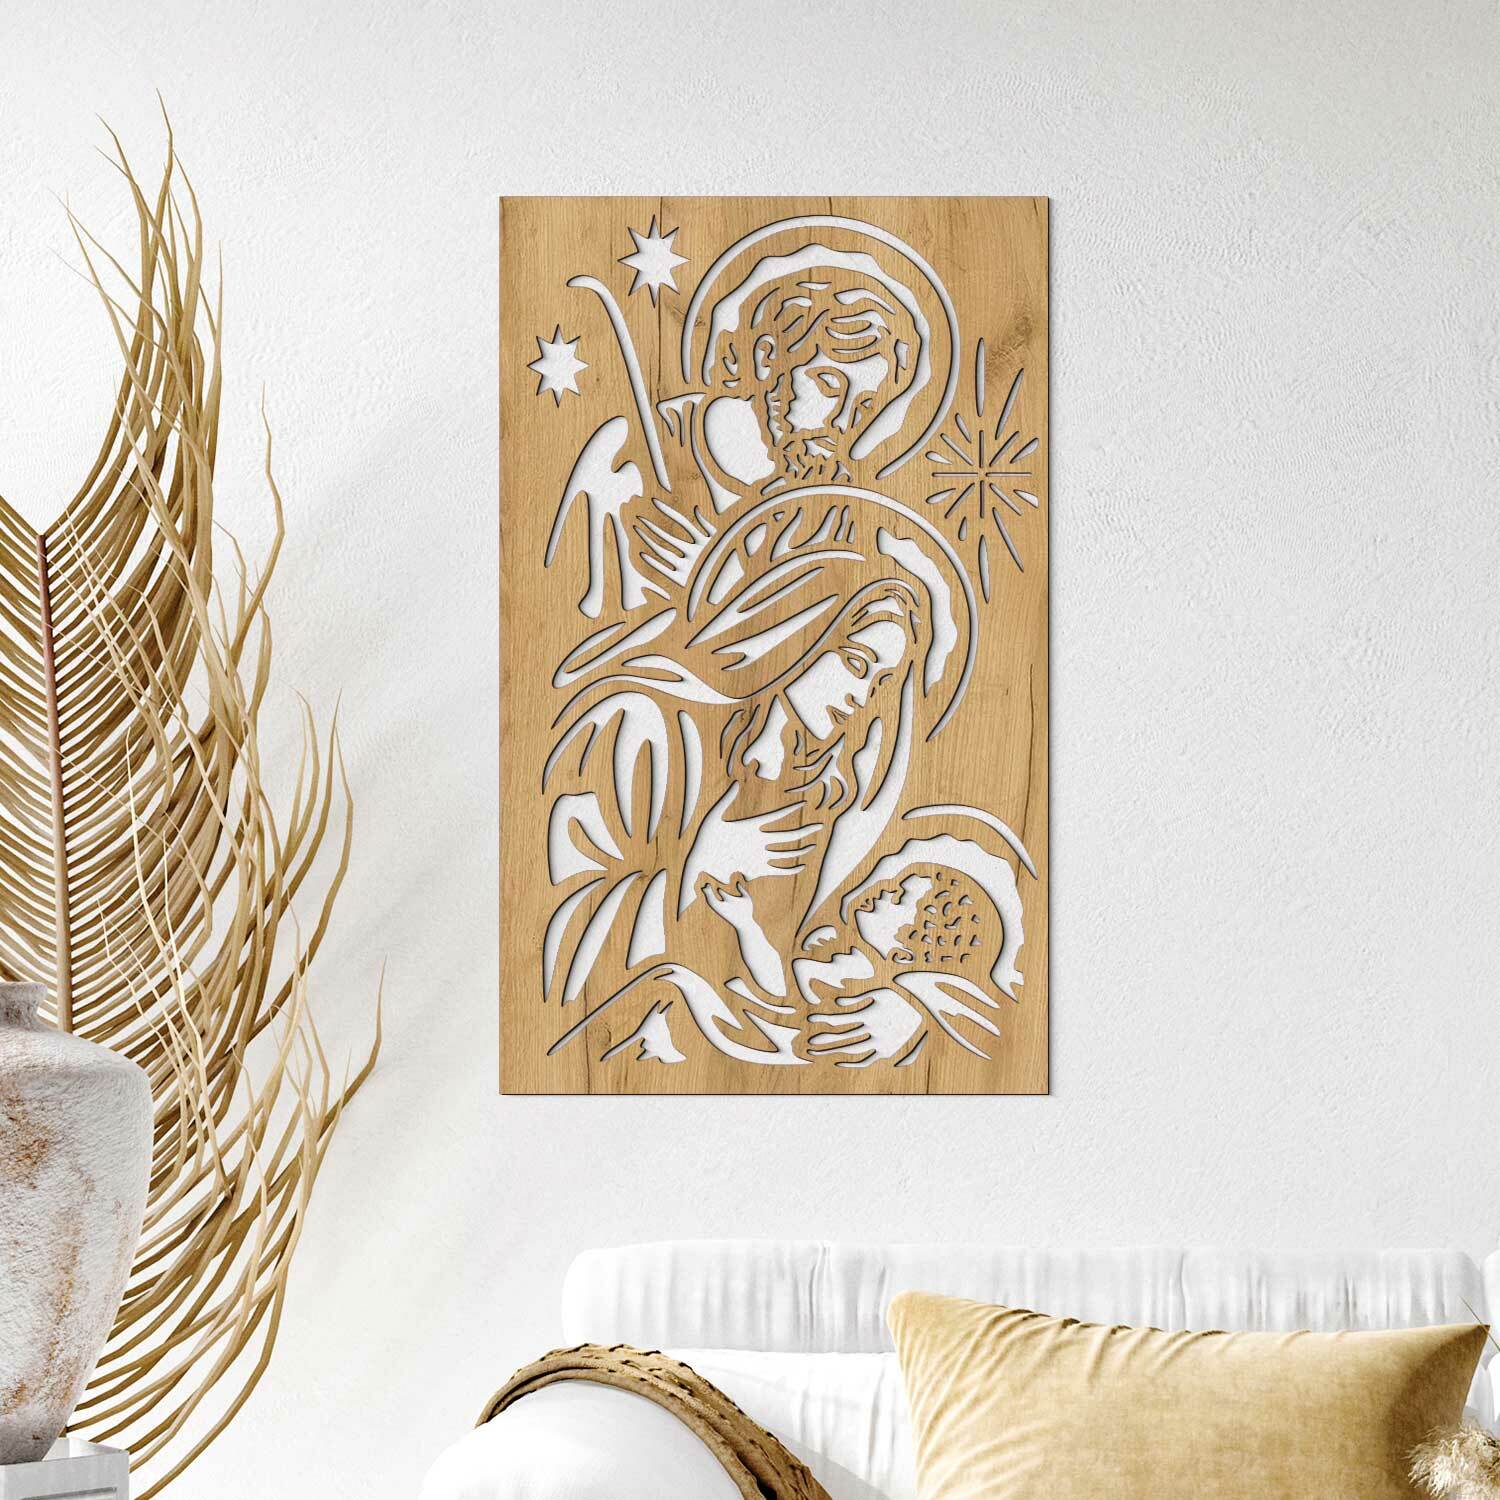 Obraz Svätej rodiny z dreva, Dub zlatý